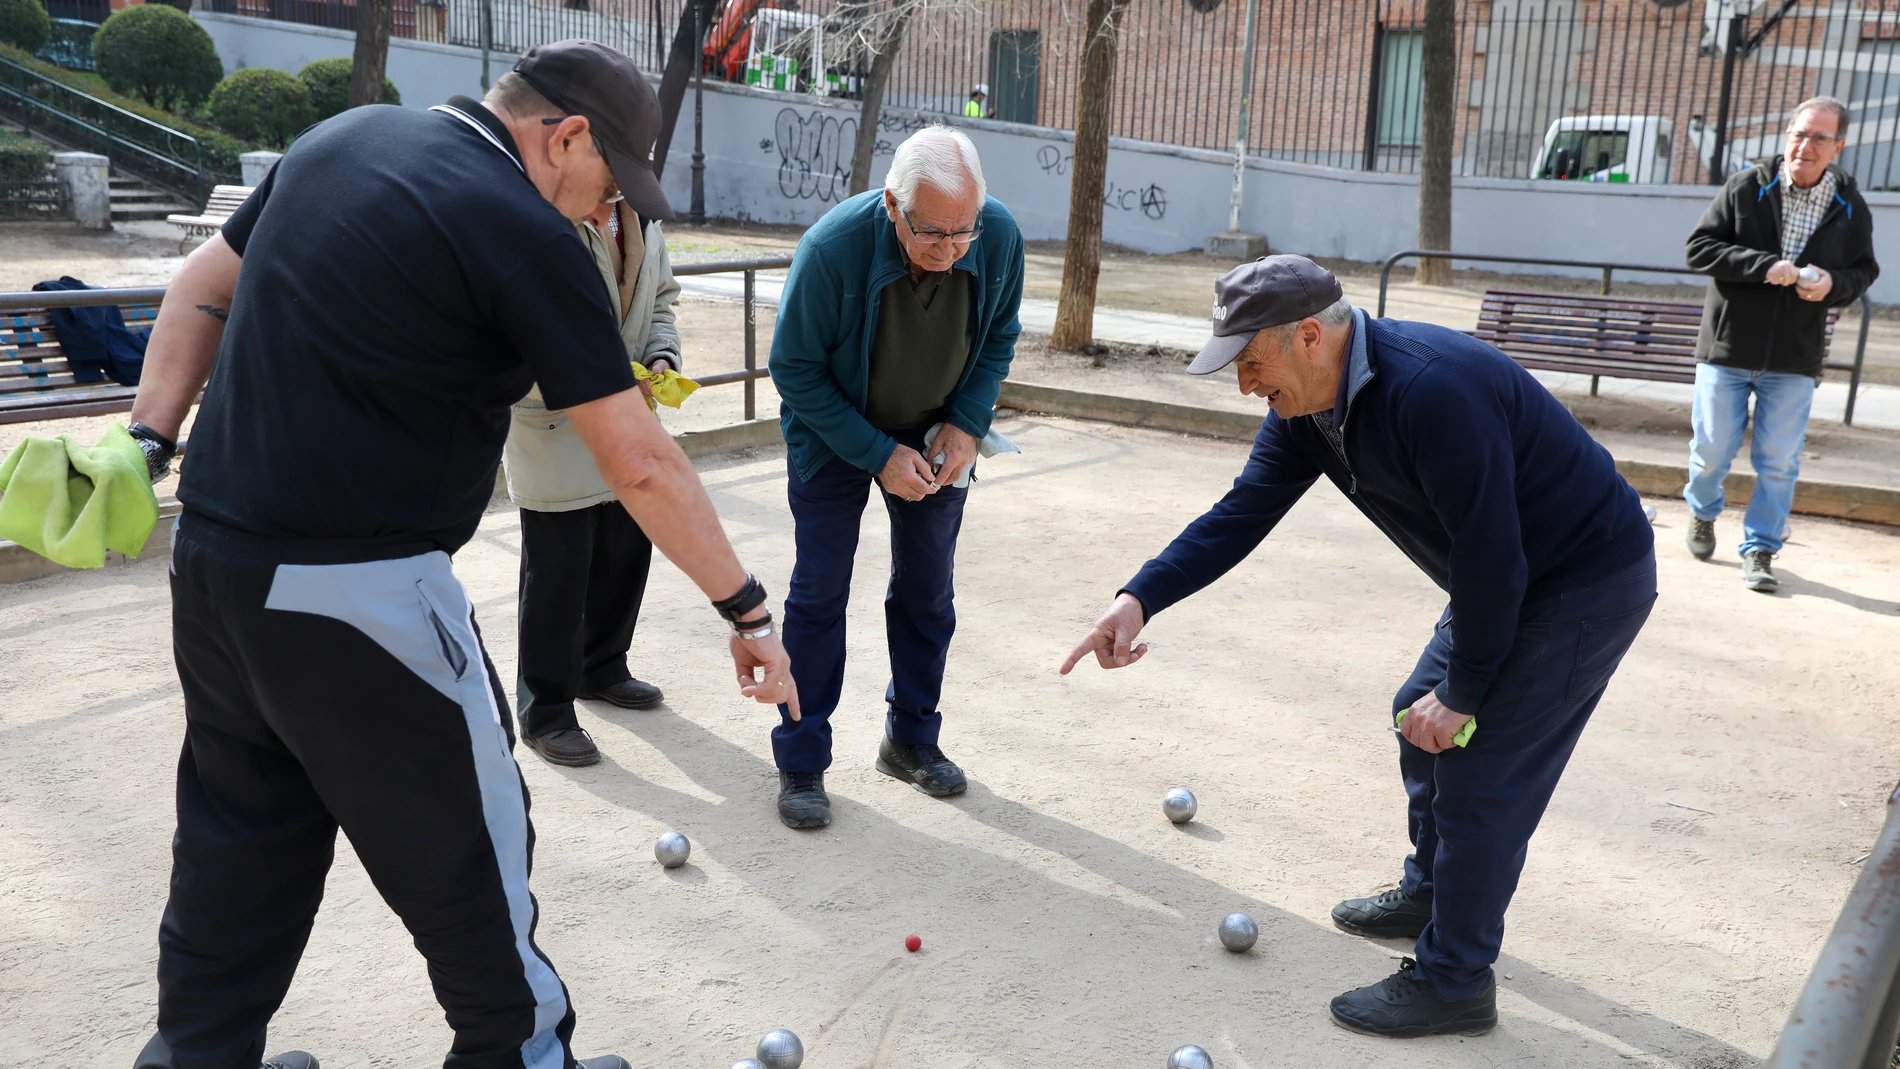 Varios jubilados juegan a la petanca en un parque del centro de Madrid